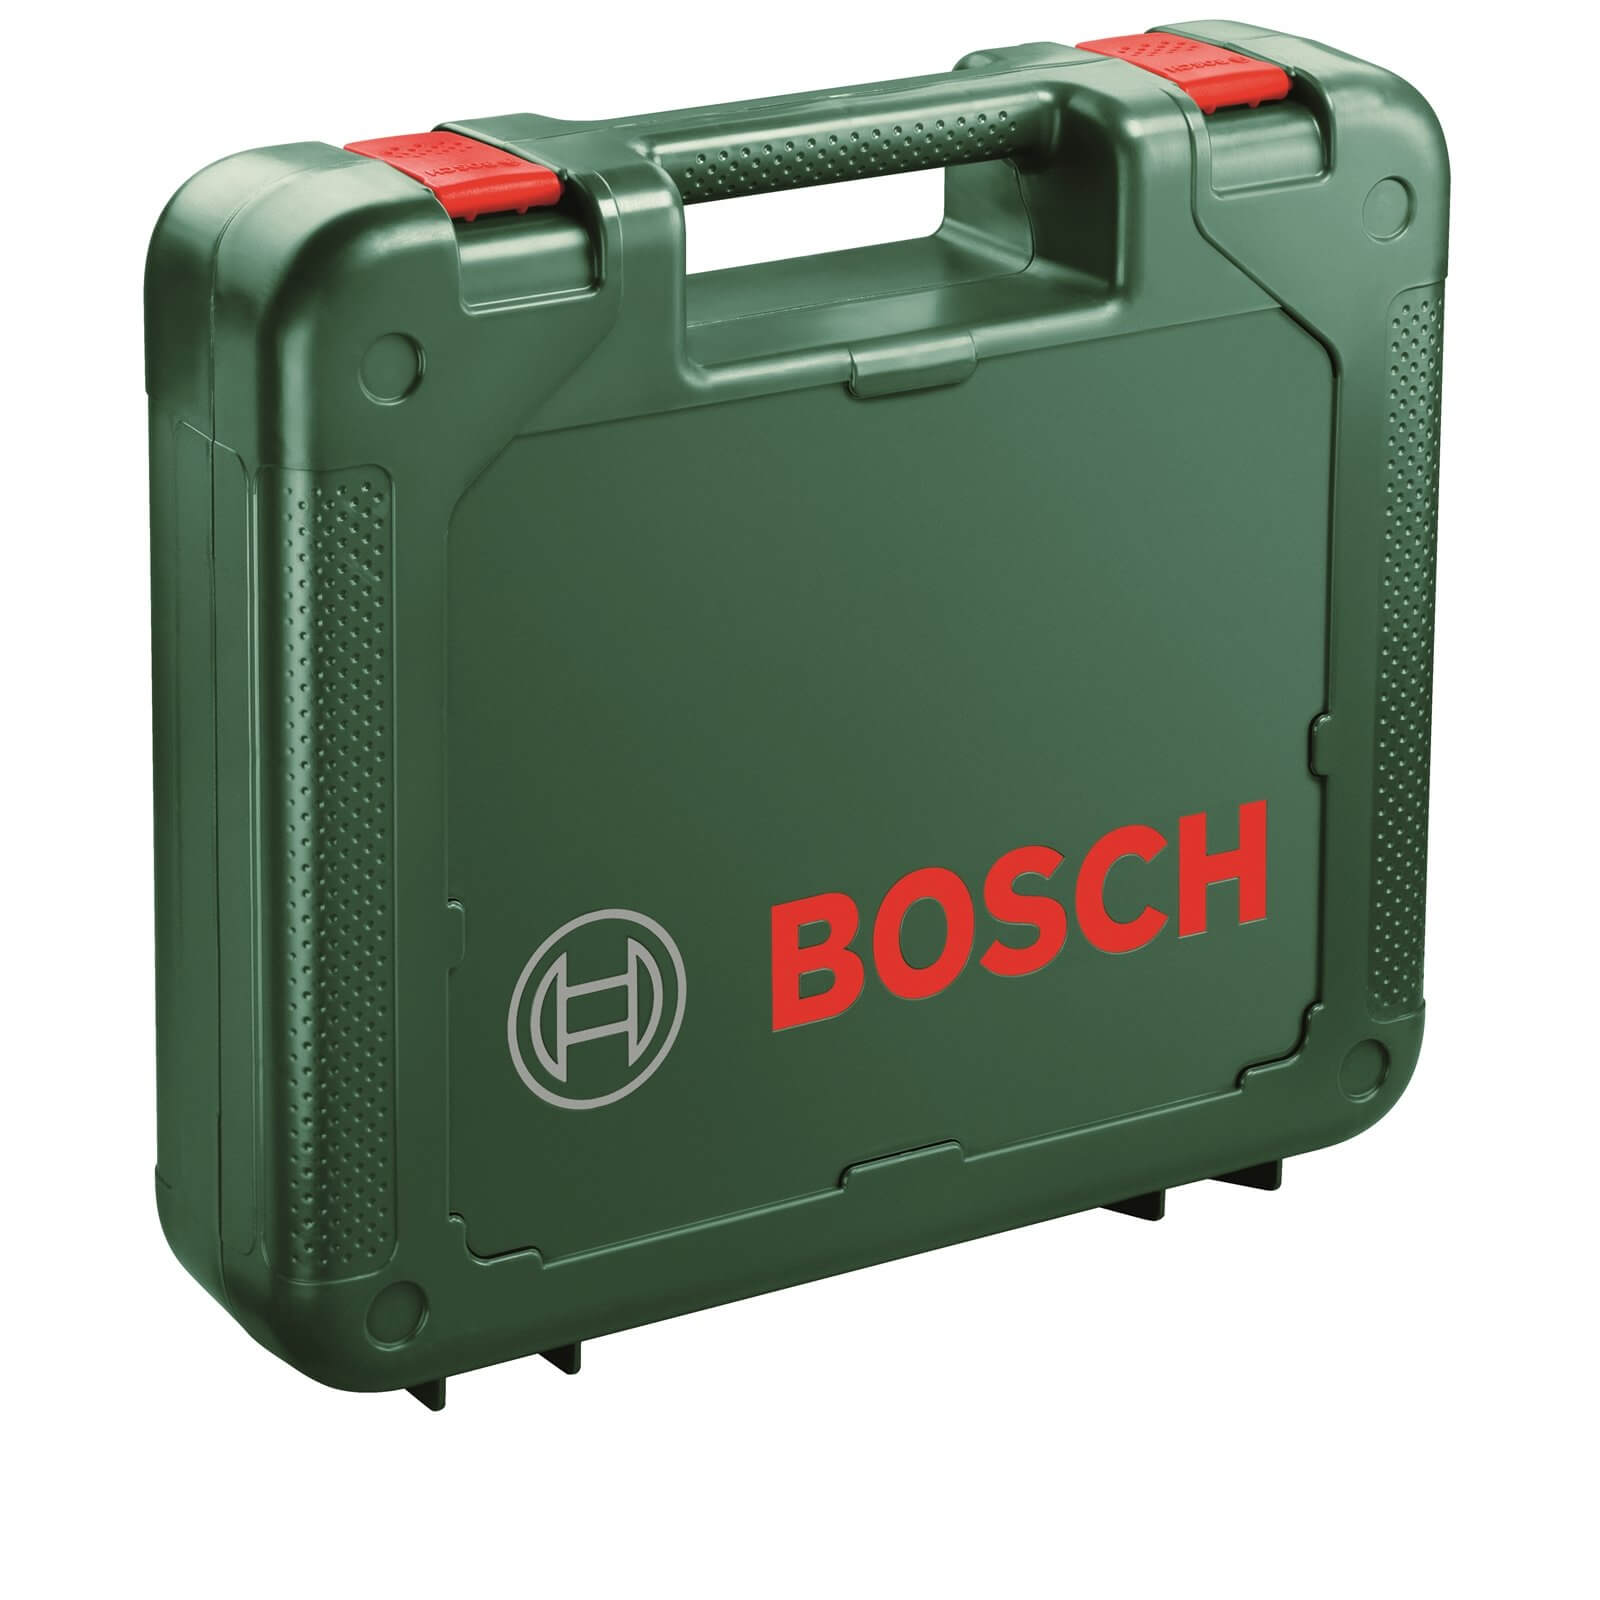 Bosch PSB 1800 Li-2 18V Cordless Hammer Drill - 2 Batteries